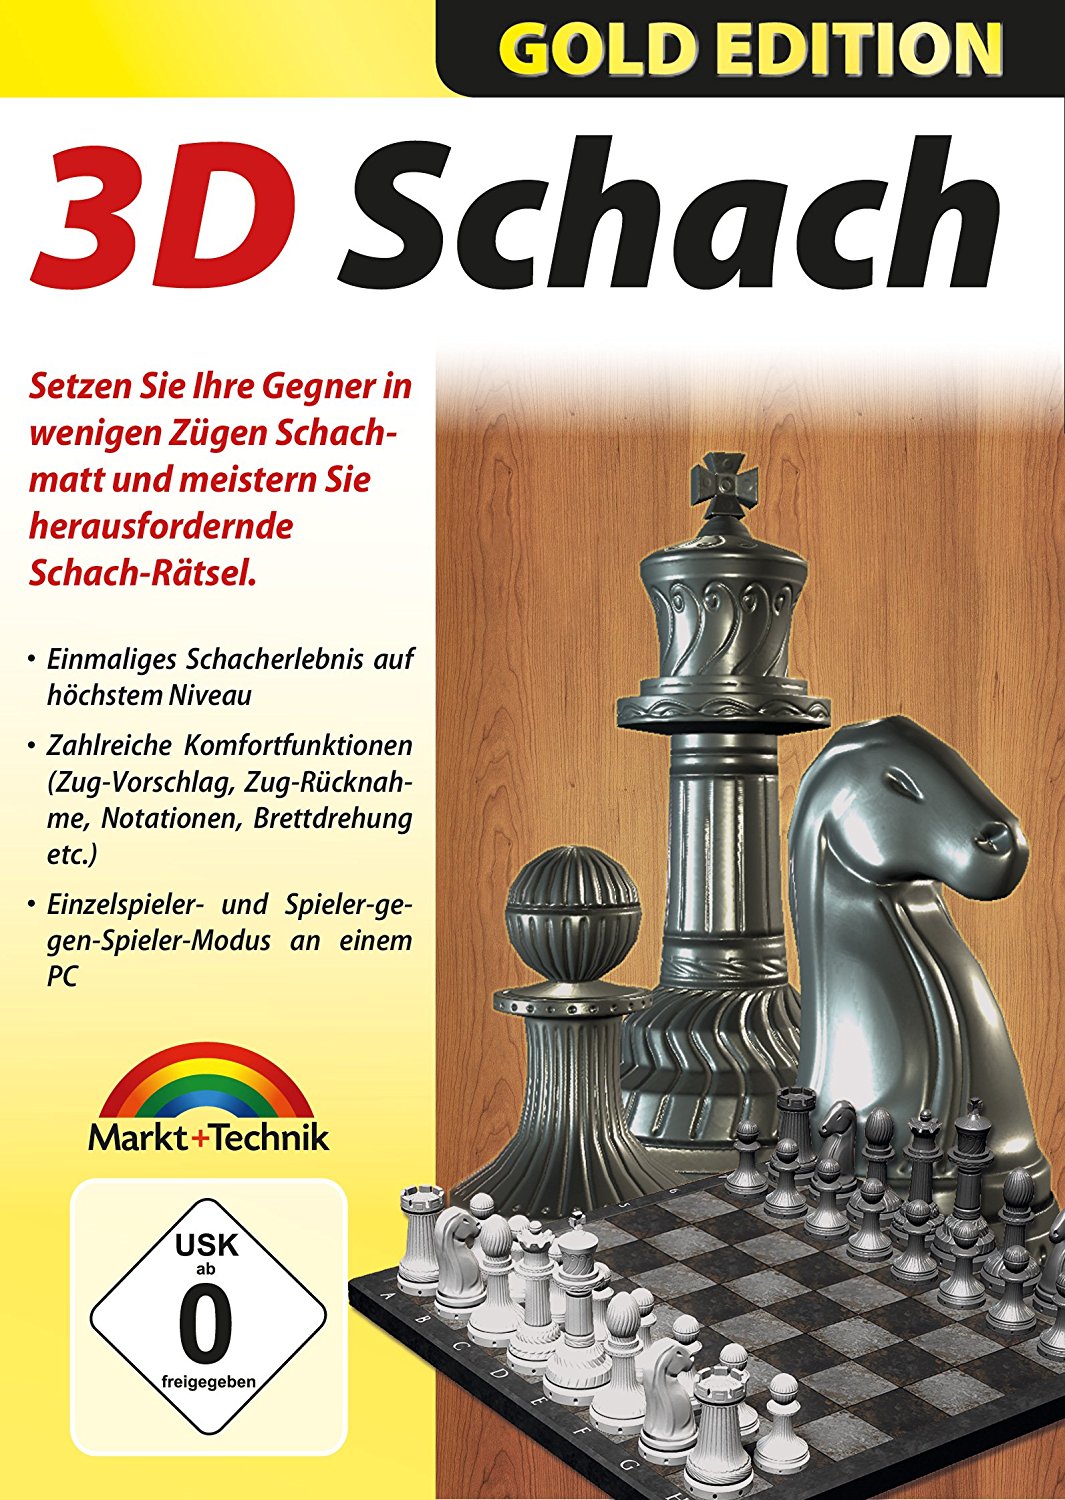 3D Schach Das Spiel der Könige für den PC, Markt+Technik Verlag GmbH, Pressemitteilung